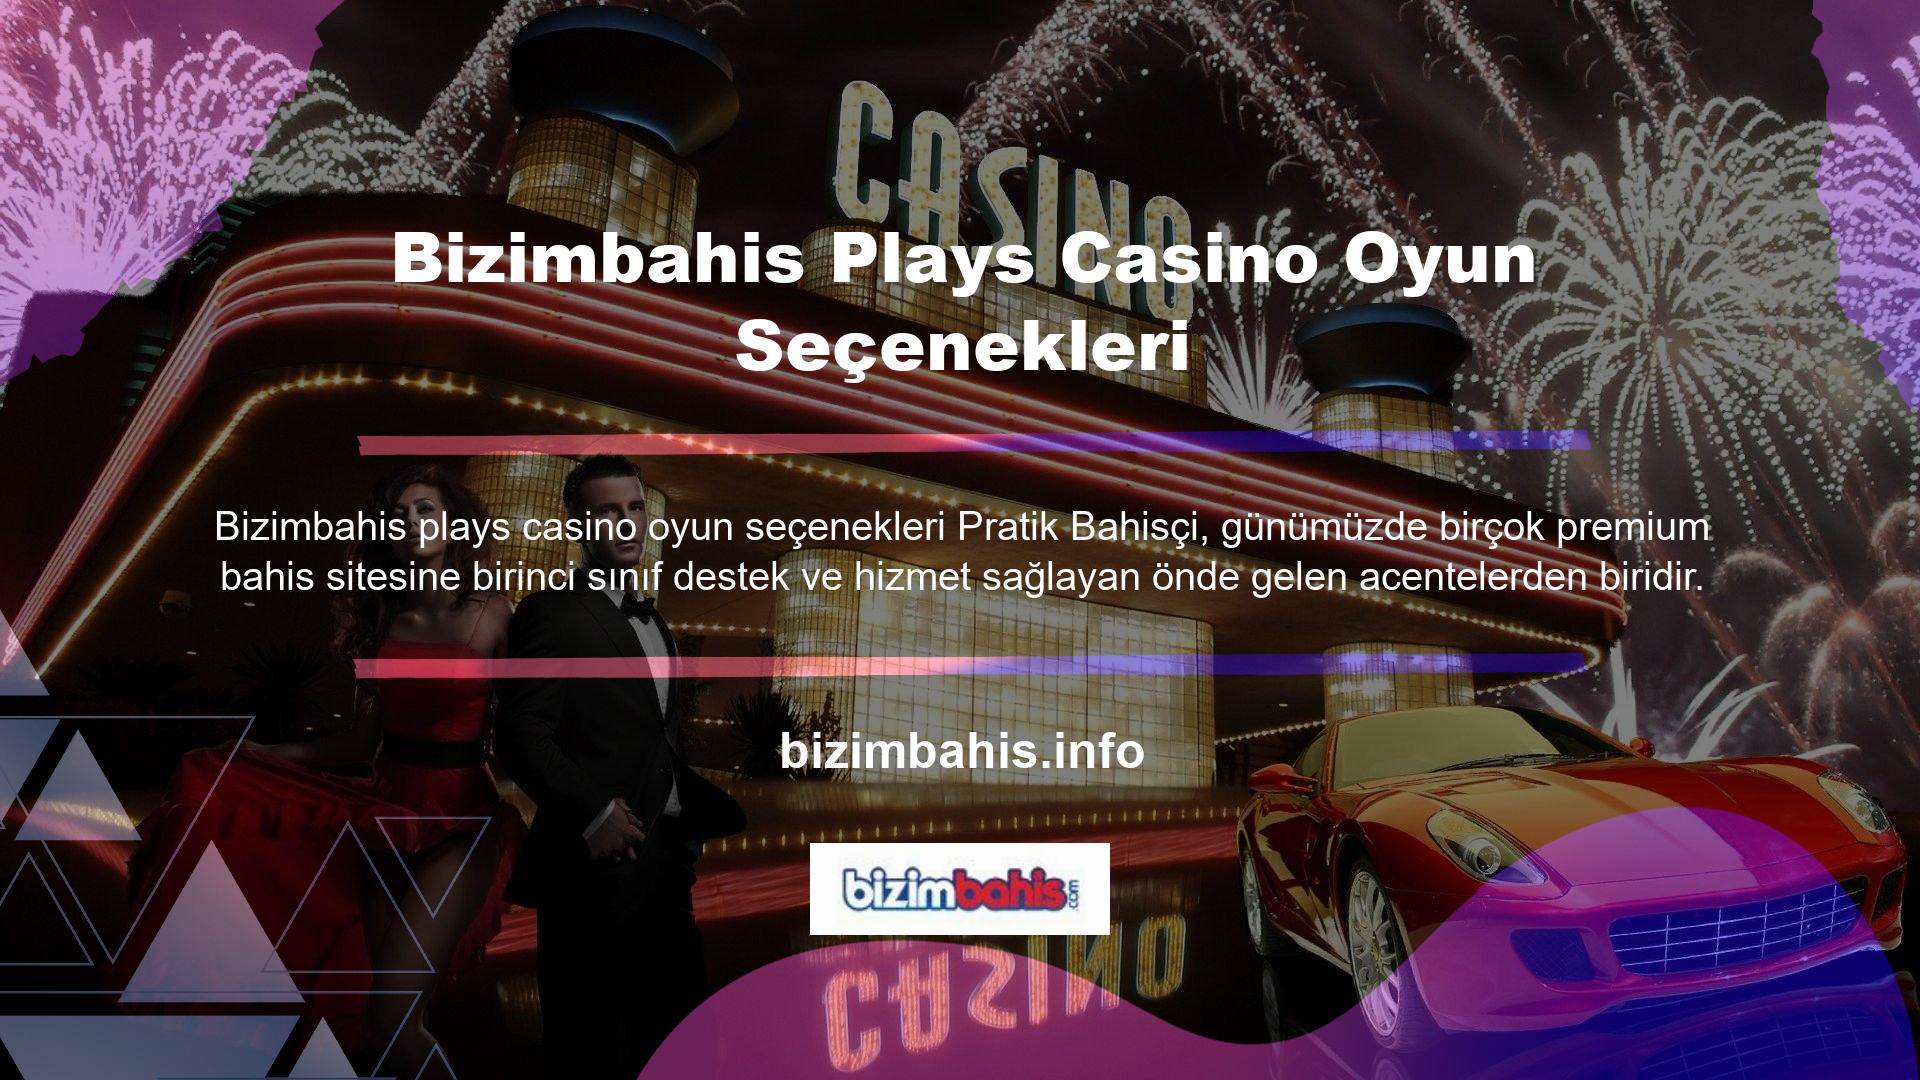 Bu kurumsal yapı altında geliştirilen çok kaliteli casino oyunlarının birçoğu en iyi detaylı bahis sitelerinde oynanmaktadır